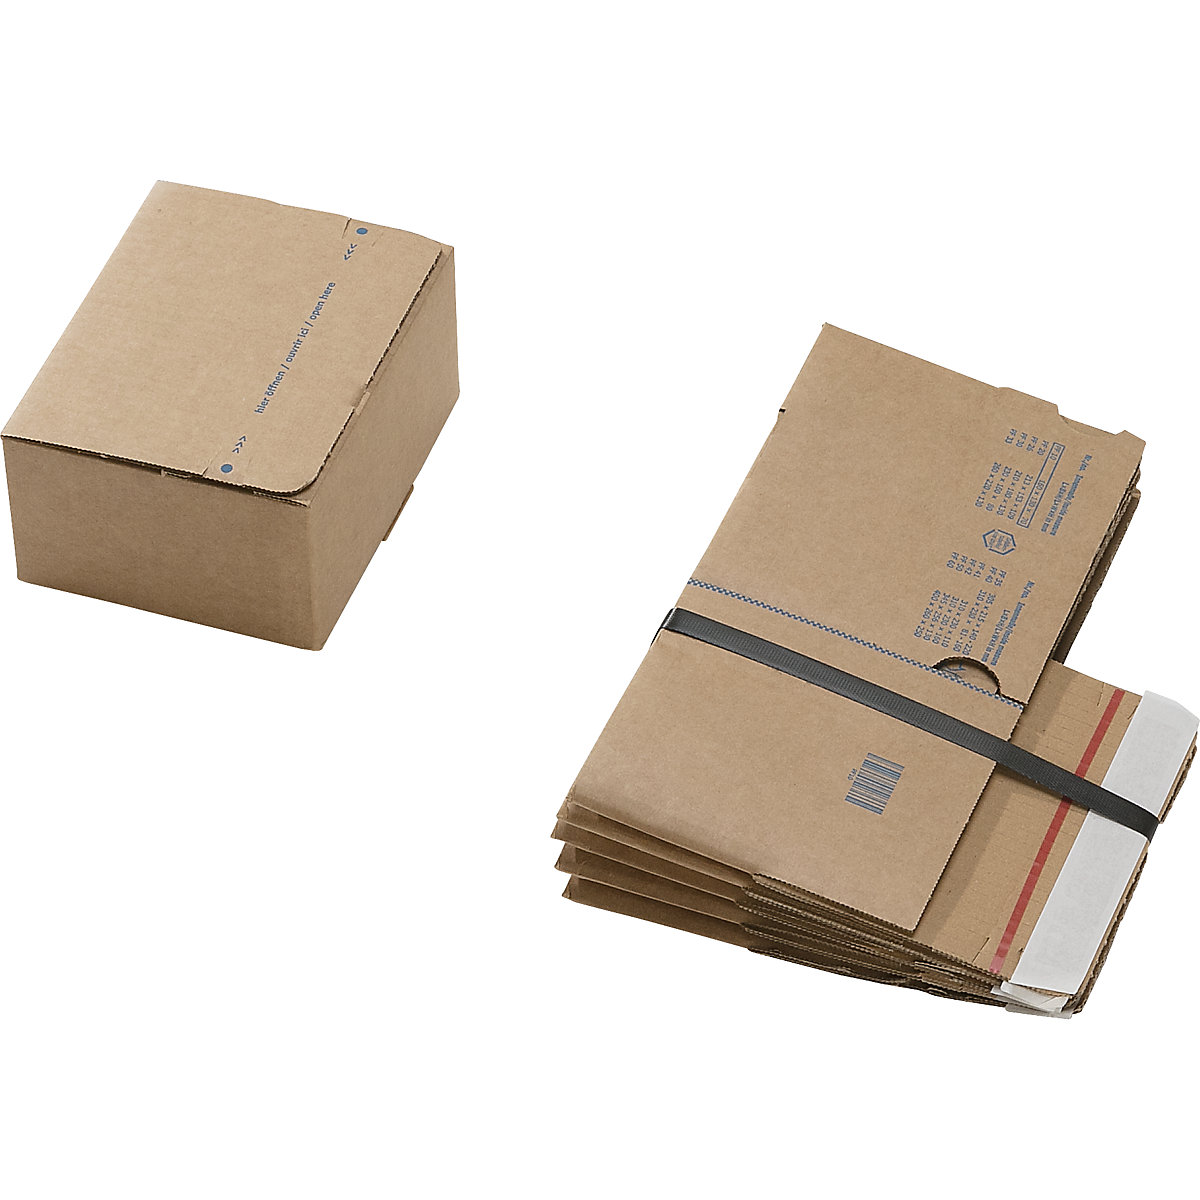 Caixa de cartão de envio, com fundo automático e fecho autocolante, dimensões interiores CxLxA 160 x 130 x 70 mm, embalagem de 100 unidades-2